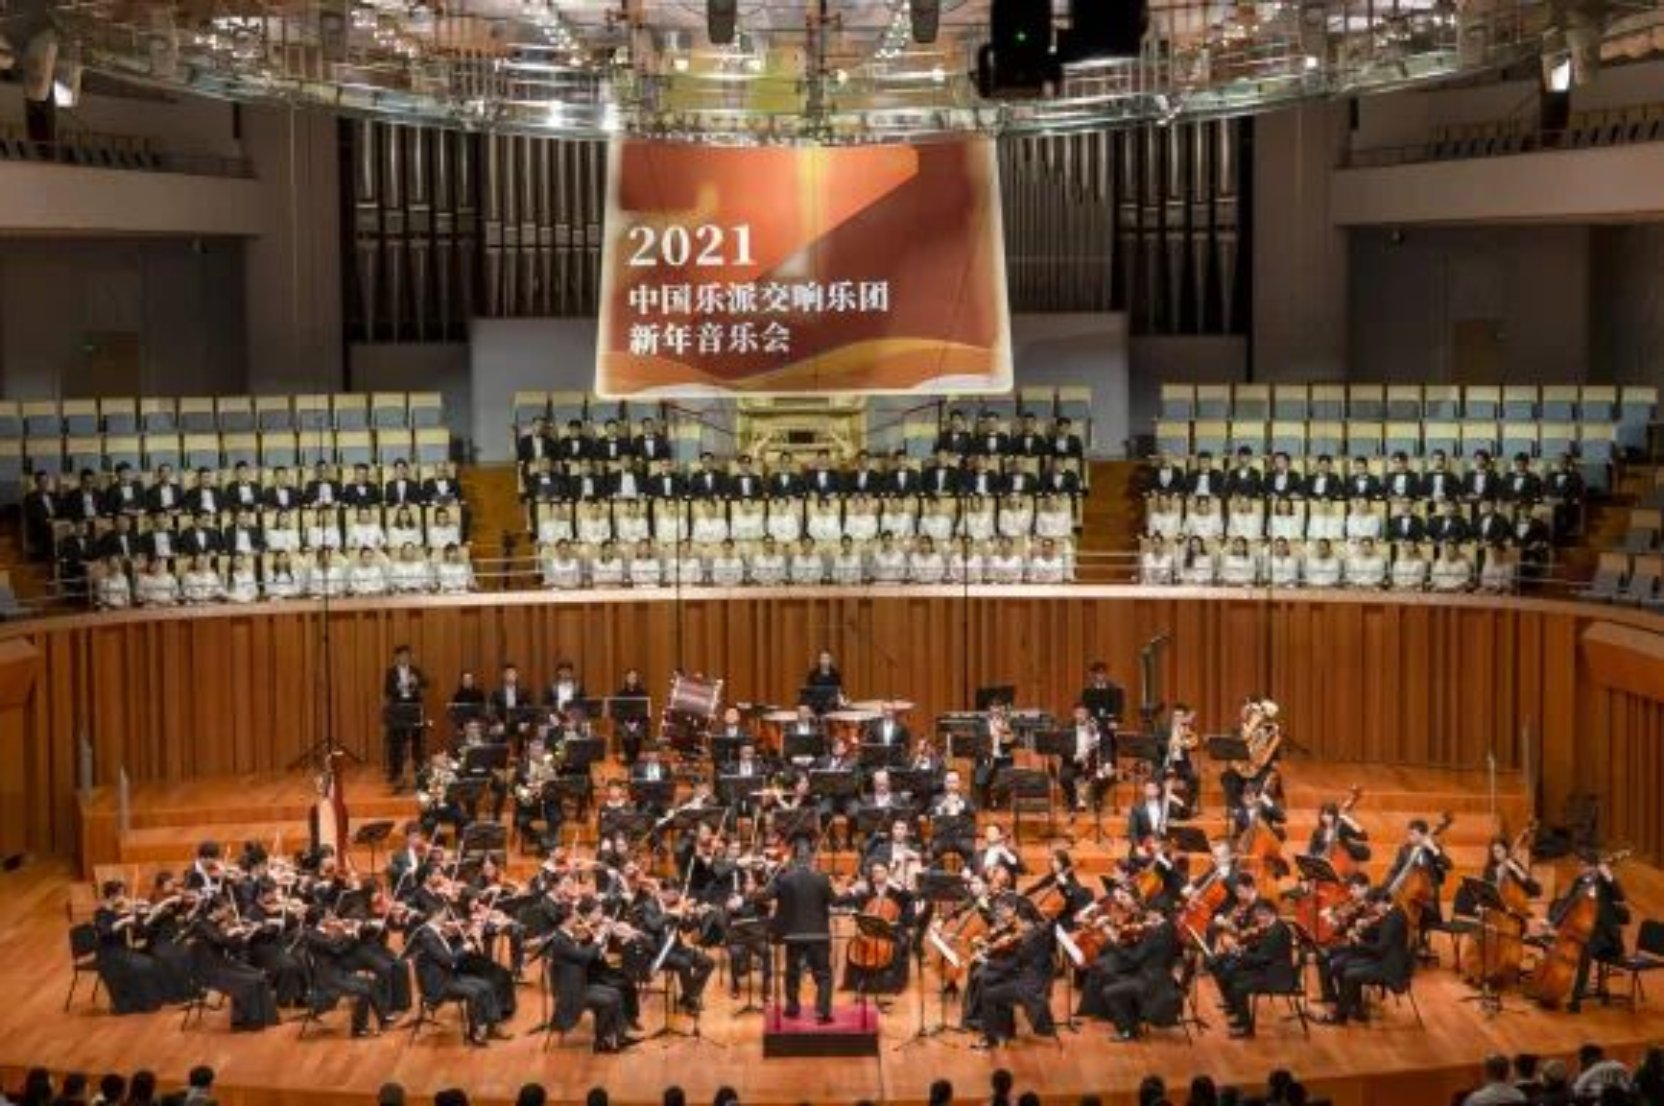 中国音乐学院2021中国乐派交响乐团新年音乐会在国家大剧院精彩上演